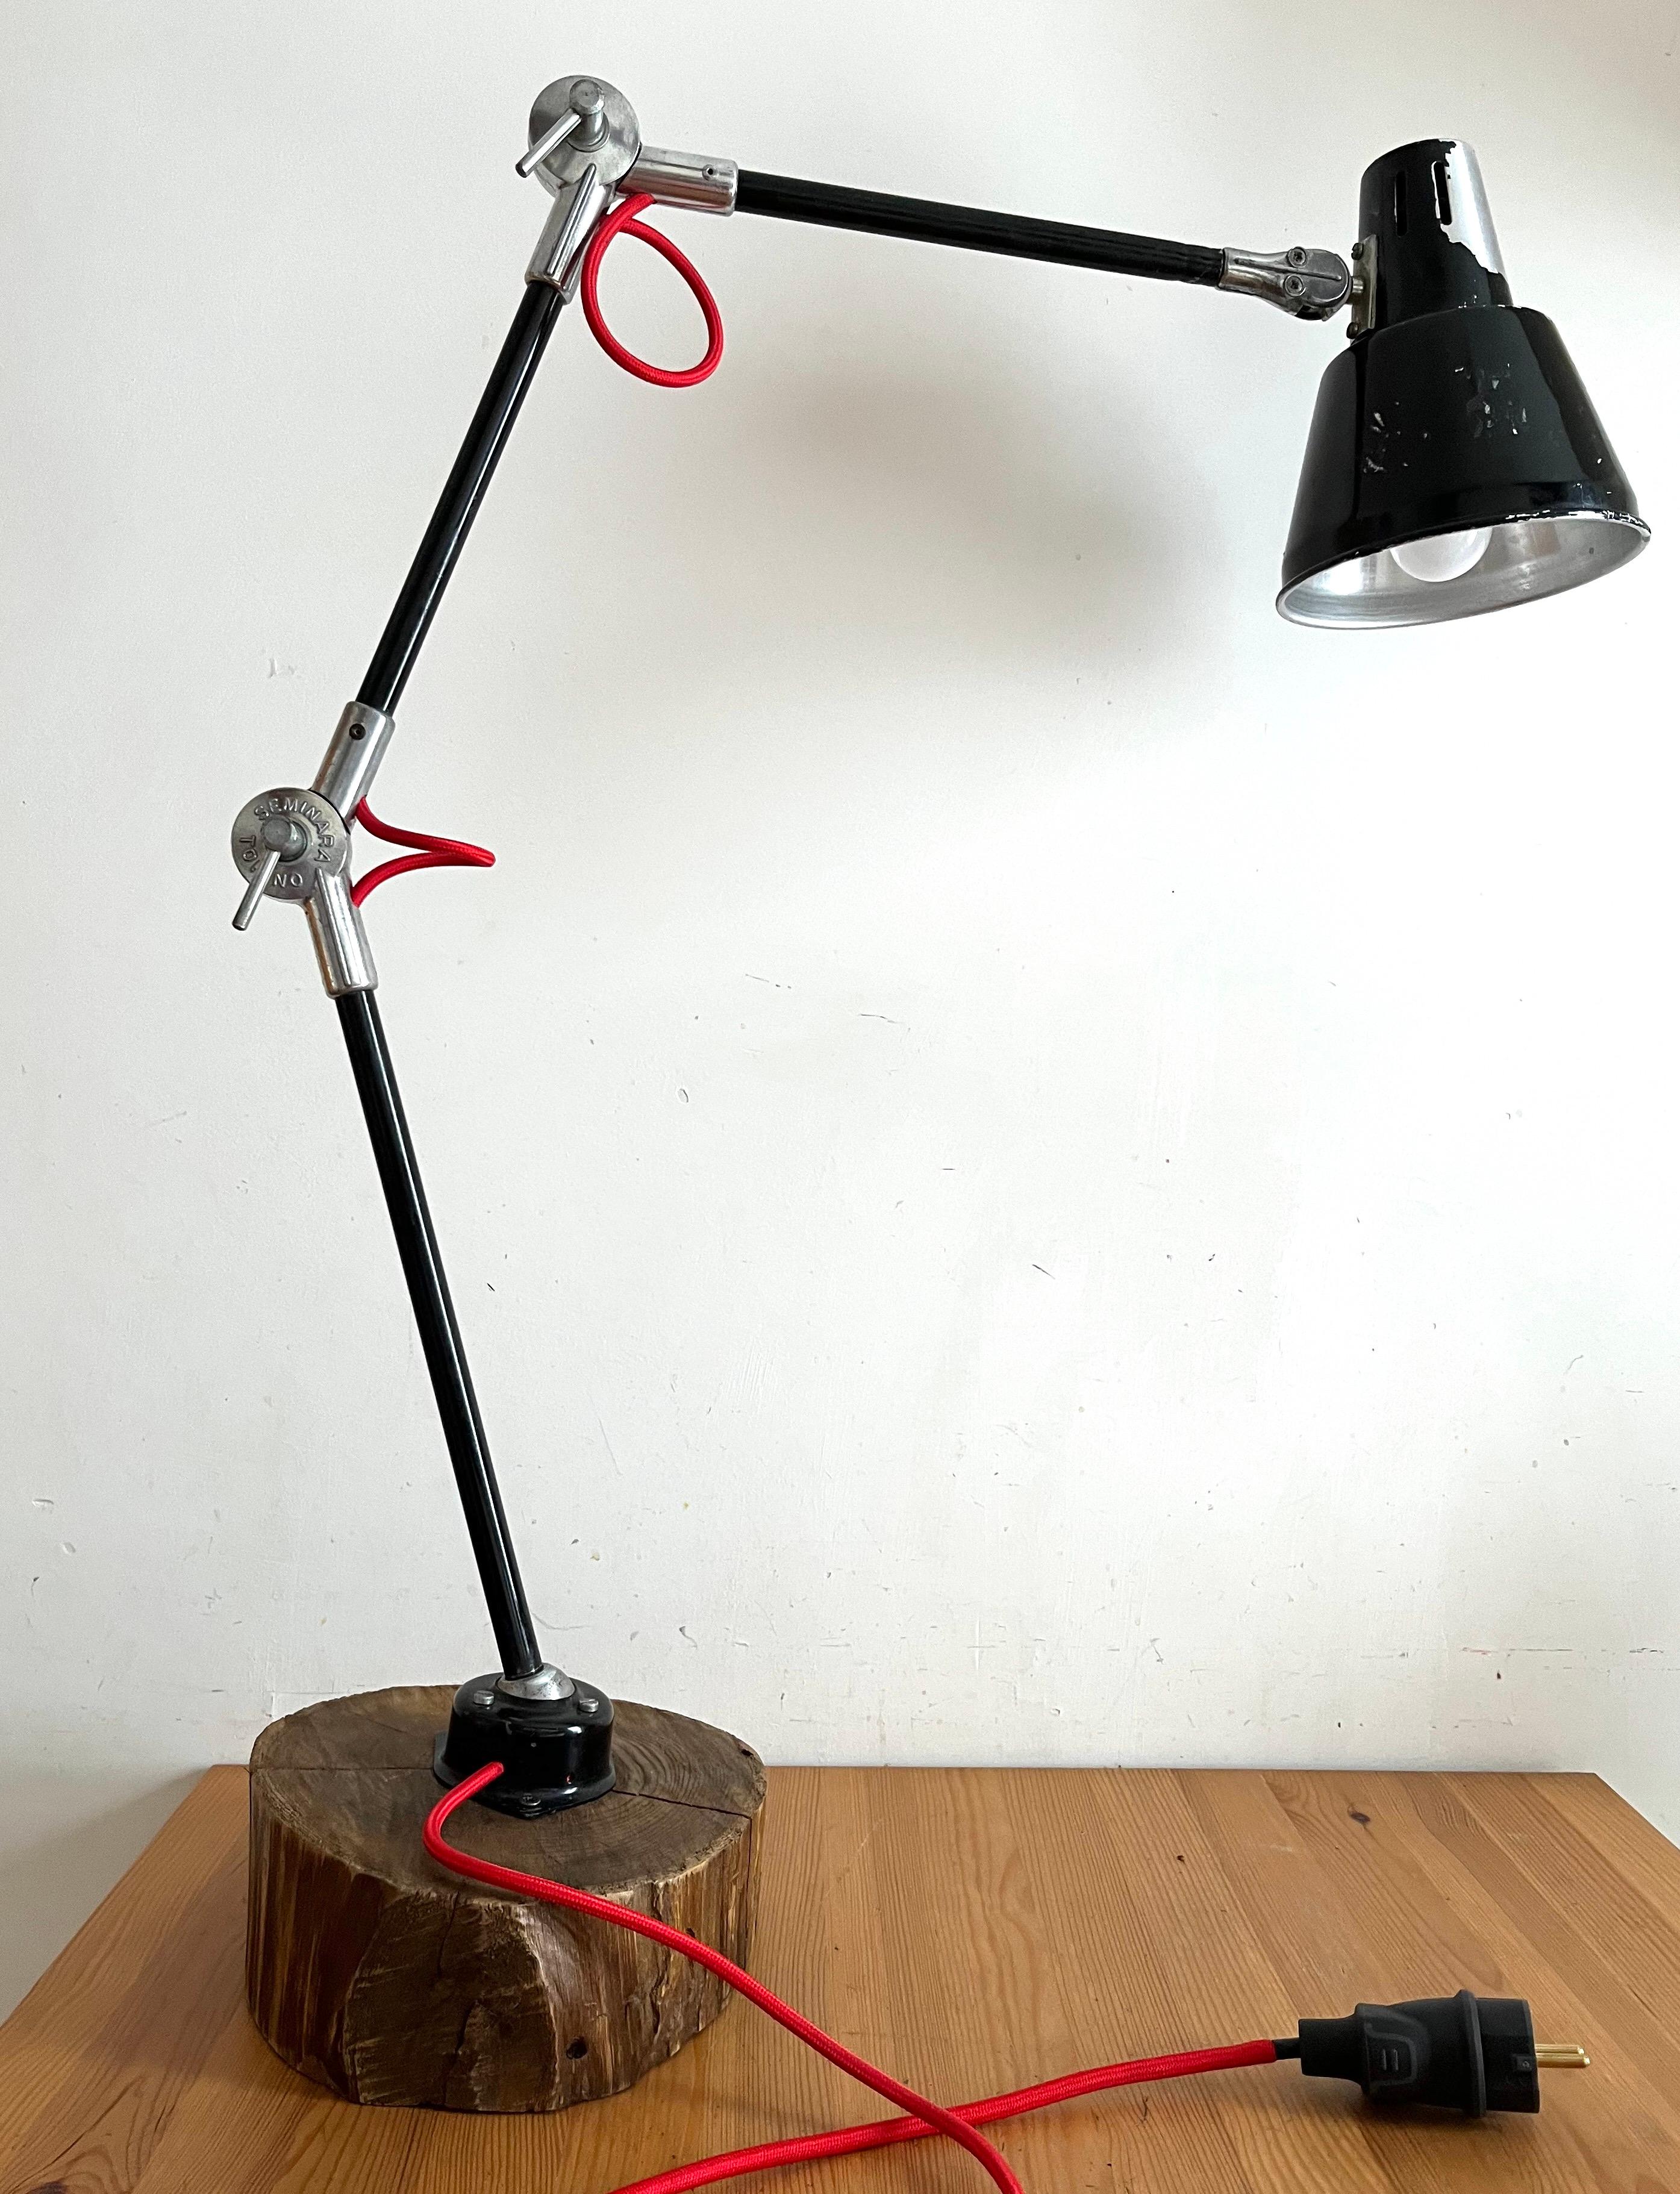 Lampada  industriale da tavolo montata su base in legno di castagno perfettamente funzionante, ricablata nella parte elettrica.
